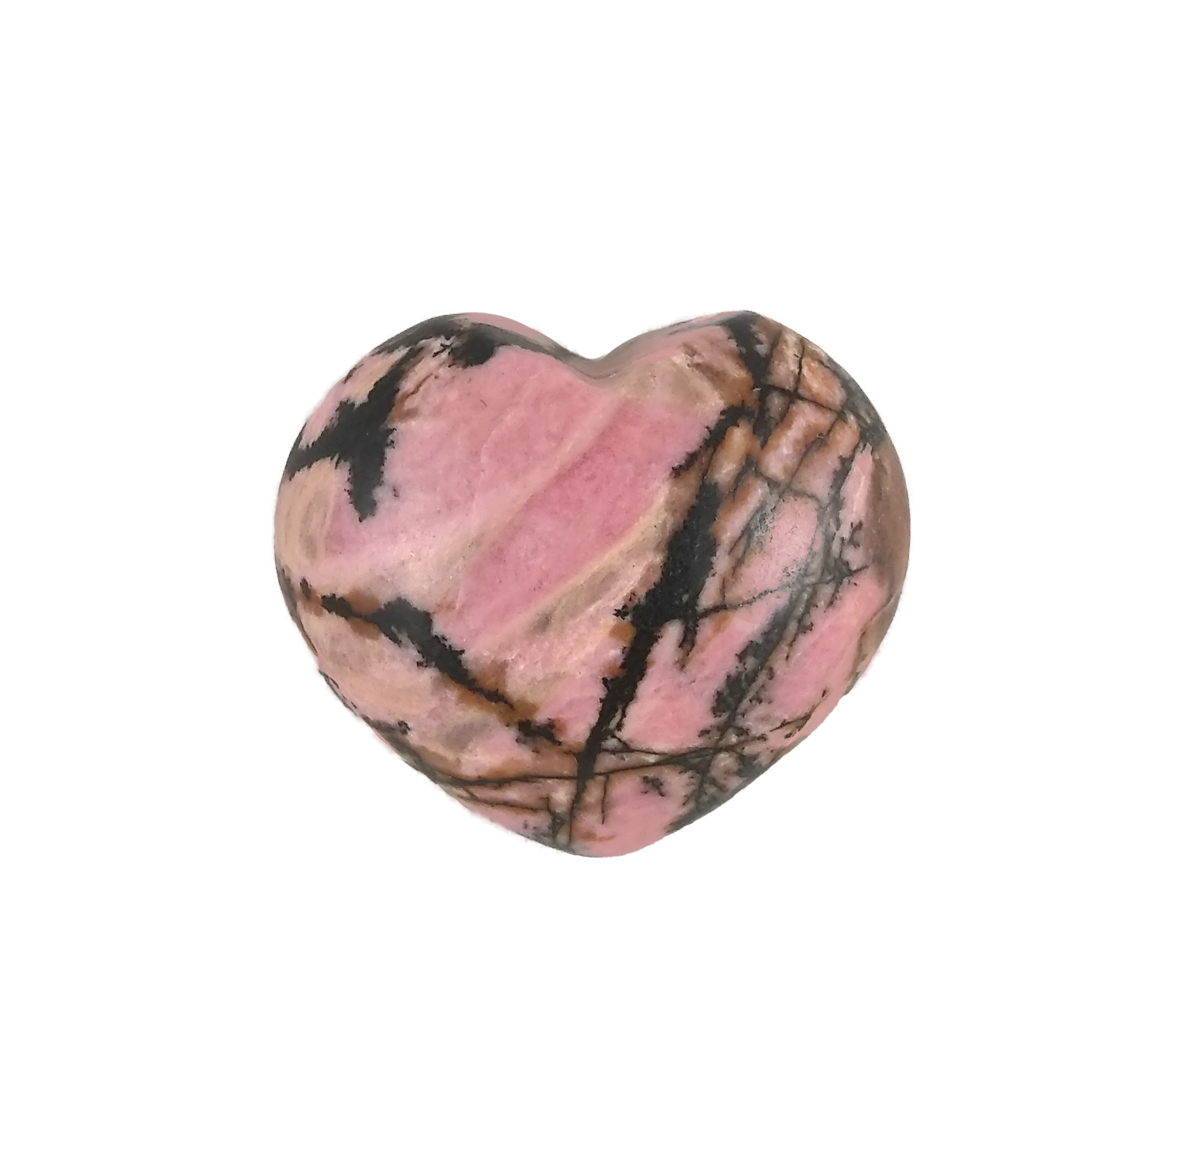 Heart-shaped rhodonite piece, 1.25"